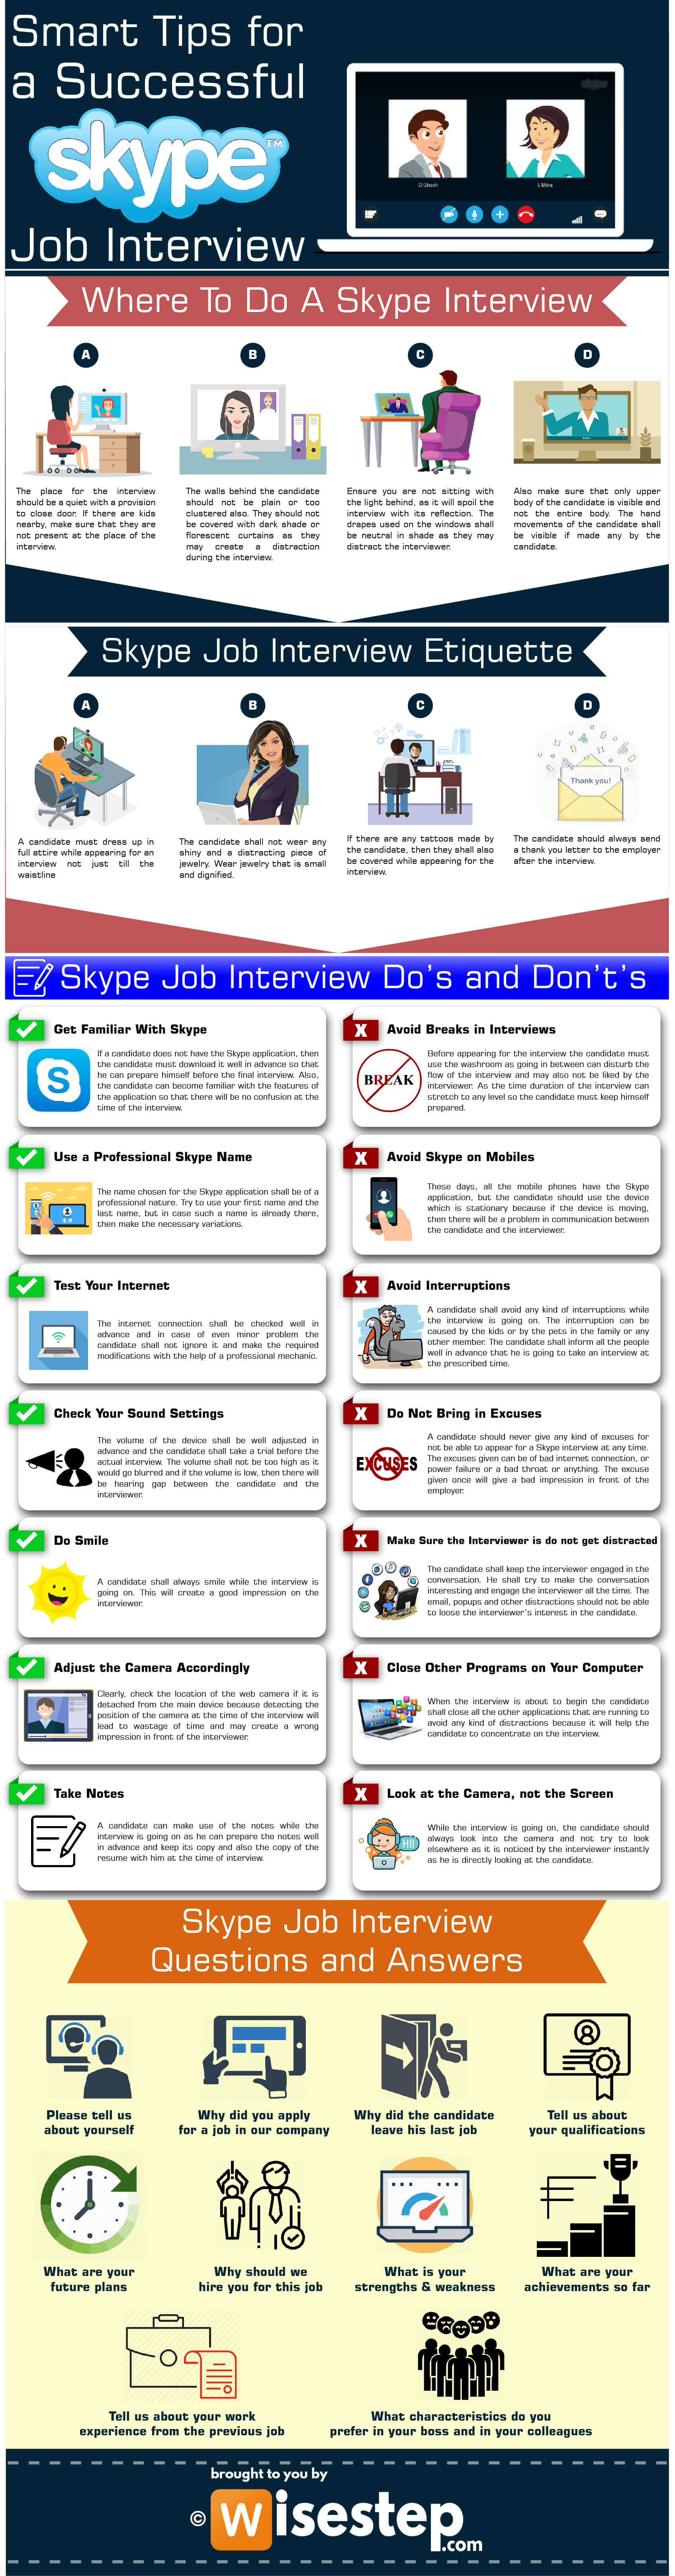 Skype job interview